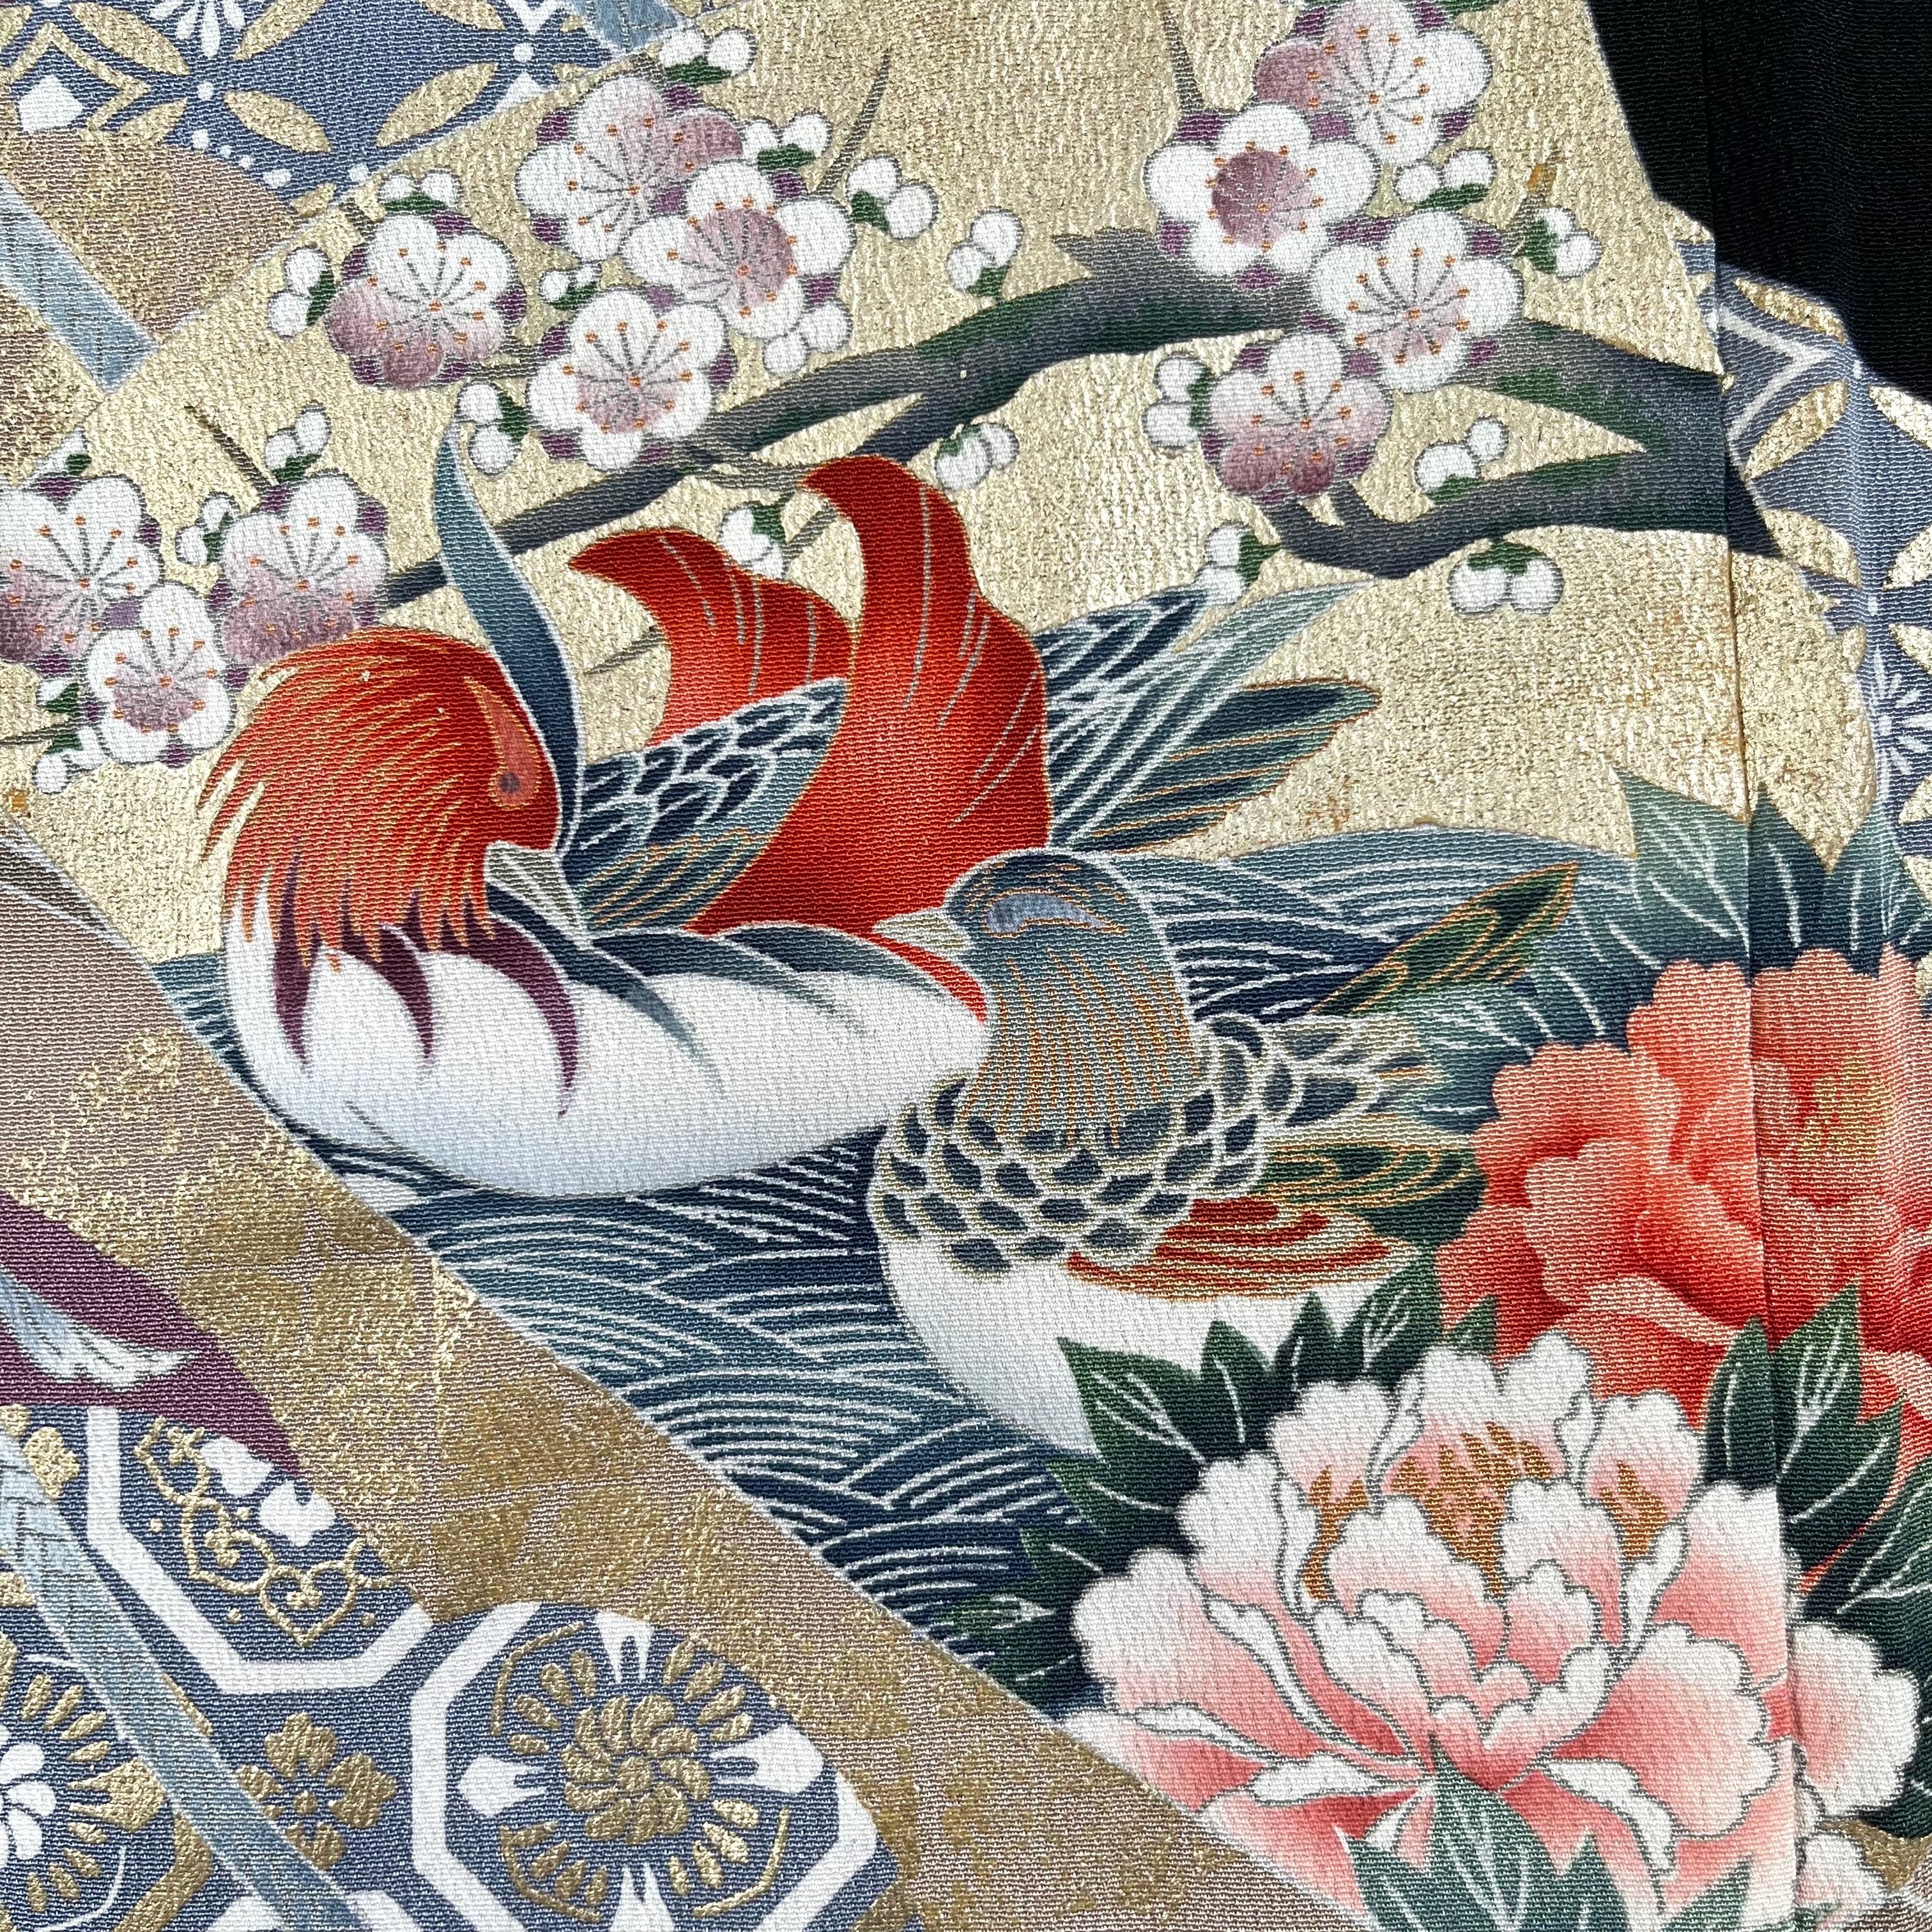 11493】 着物リメイク 留袖 ロングコート 扇に花鳥模様 鴛鴦 鶴 牡丹